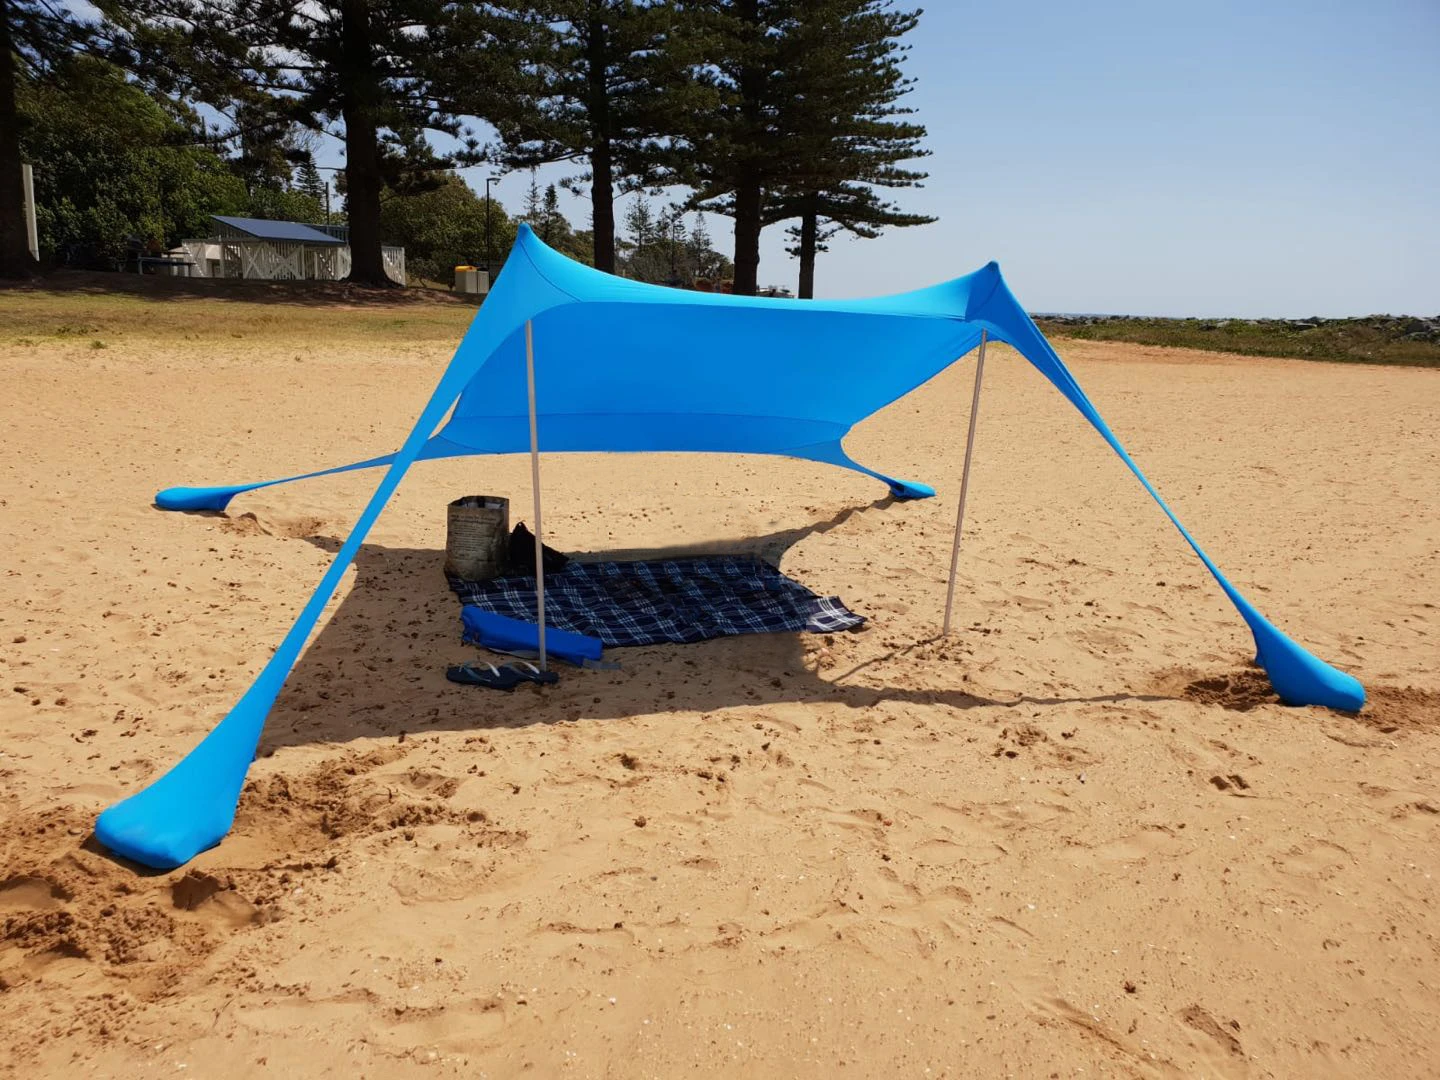 210X210 см портативная Пляжная Палатка Защита от ультрафиолета открытый летний пляжный зонт идеальный навес солнцезащитный HW182